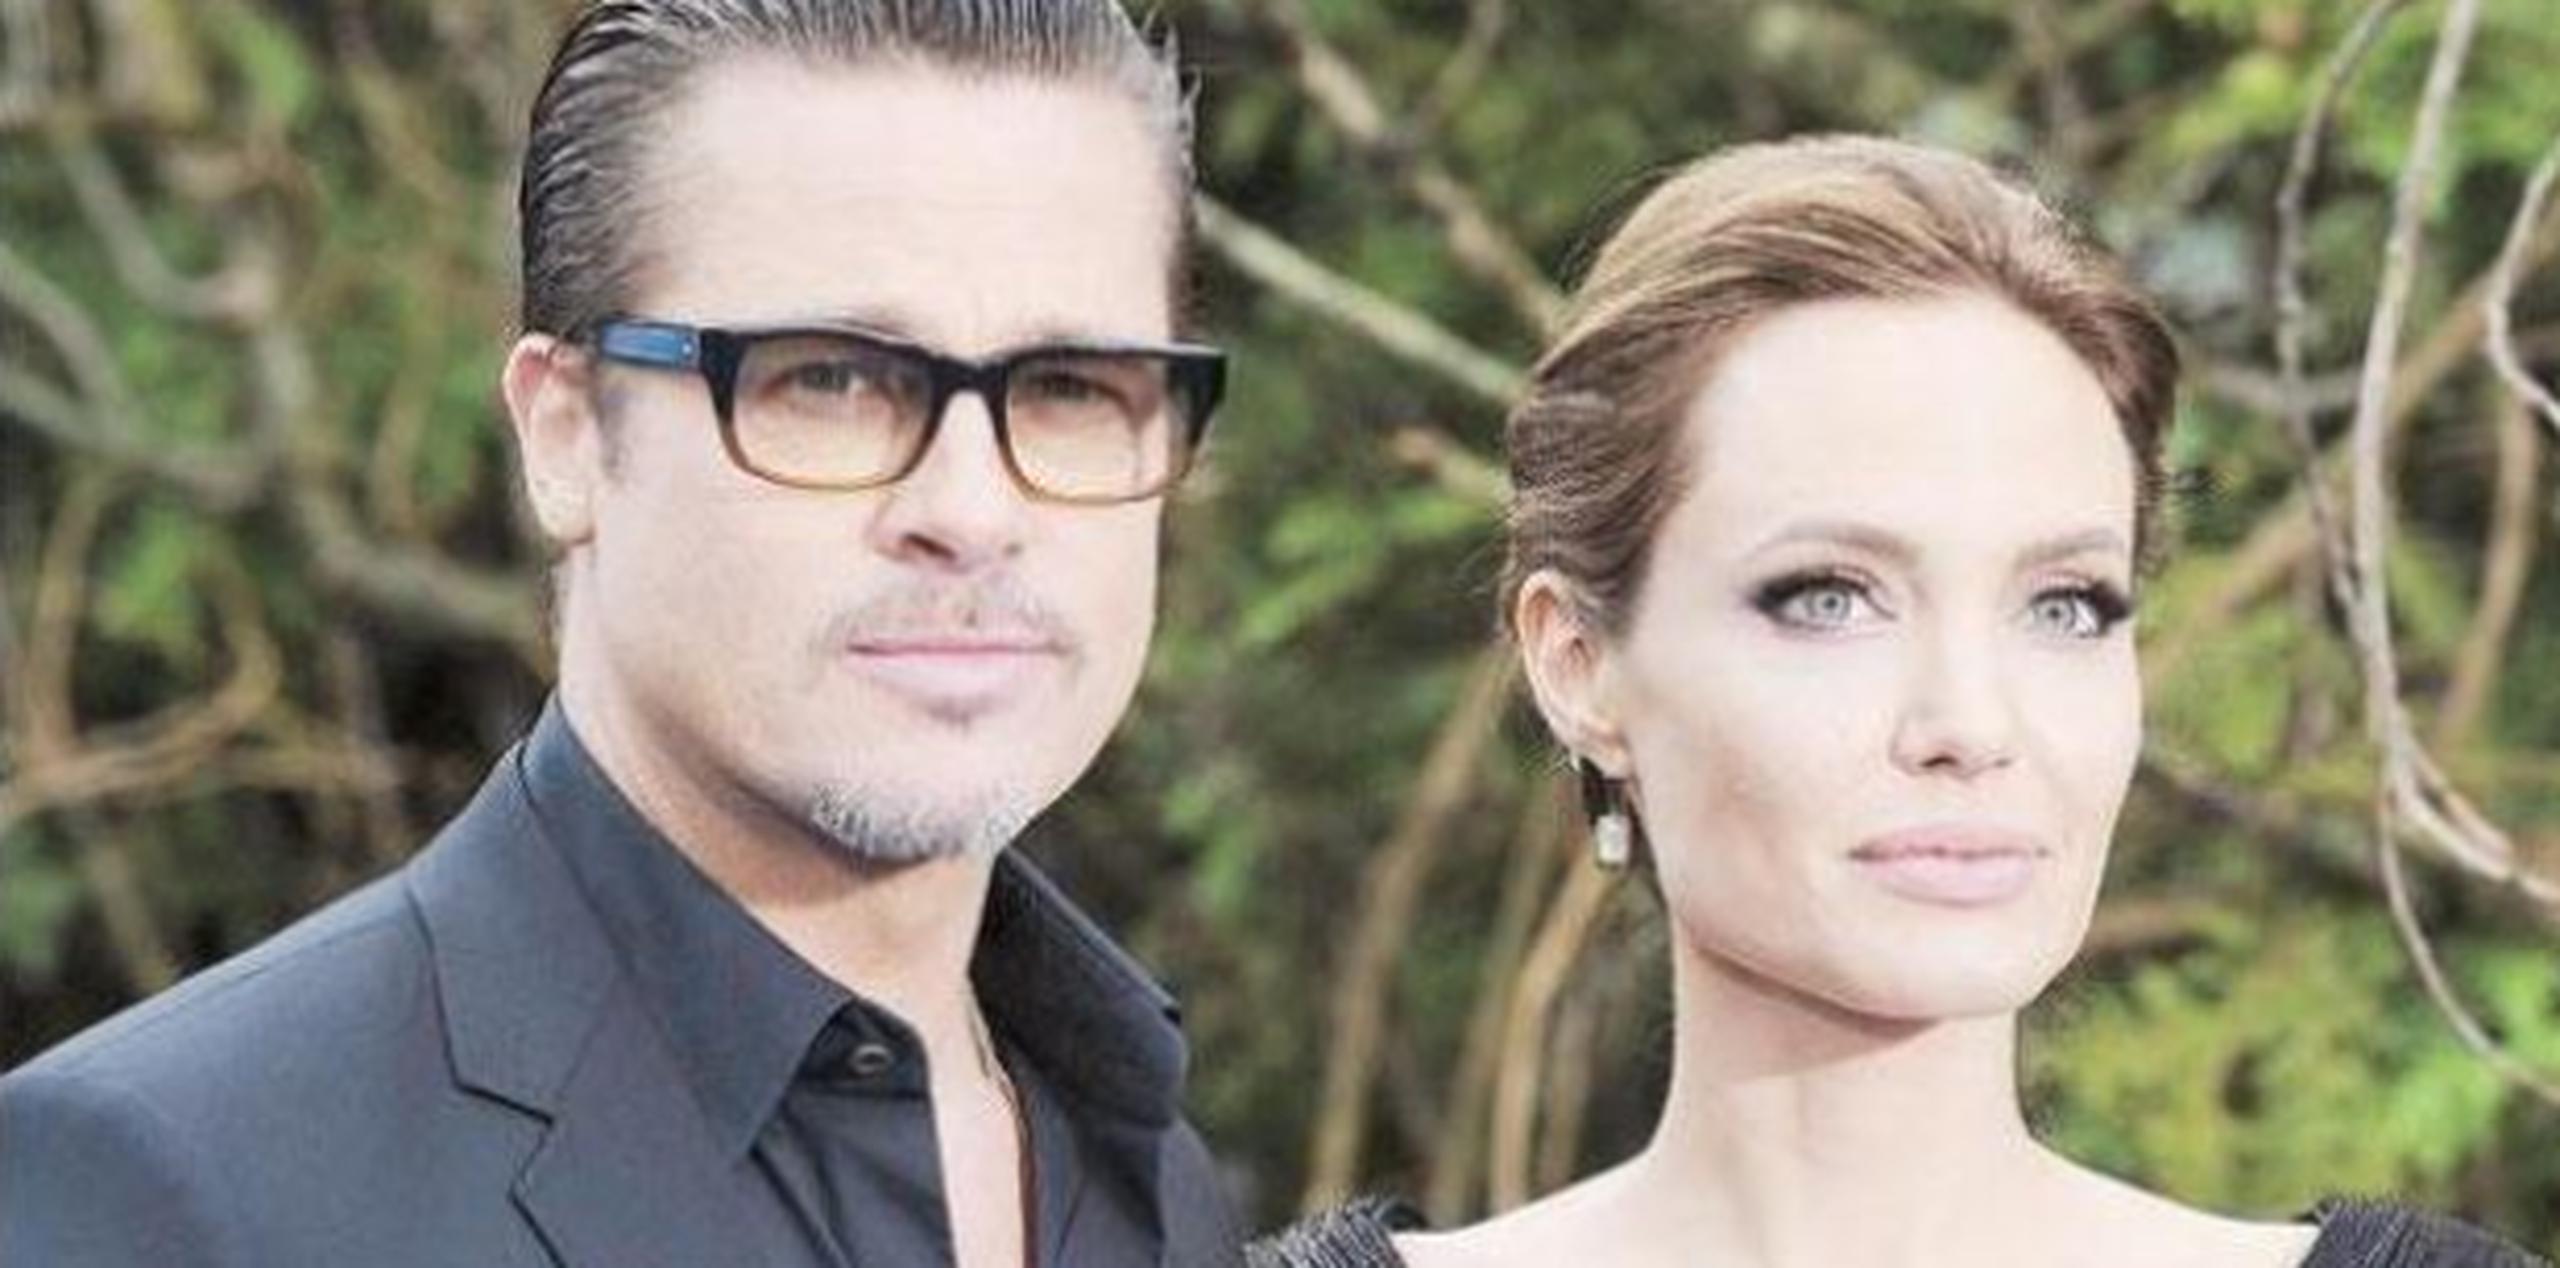 Esta es la primera vez que Pitt fue fotografiado desde que se anunció su divorcio con Angelina Jolie, el pasado 20 de septiembre. (Archivo)